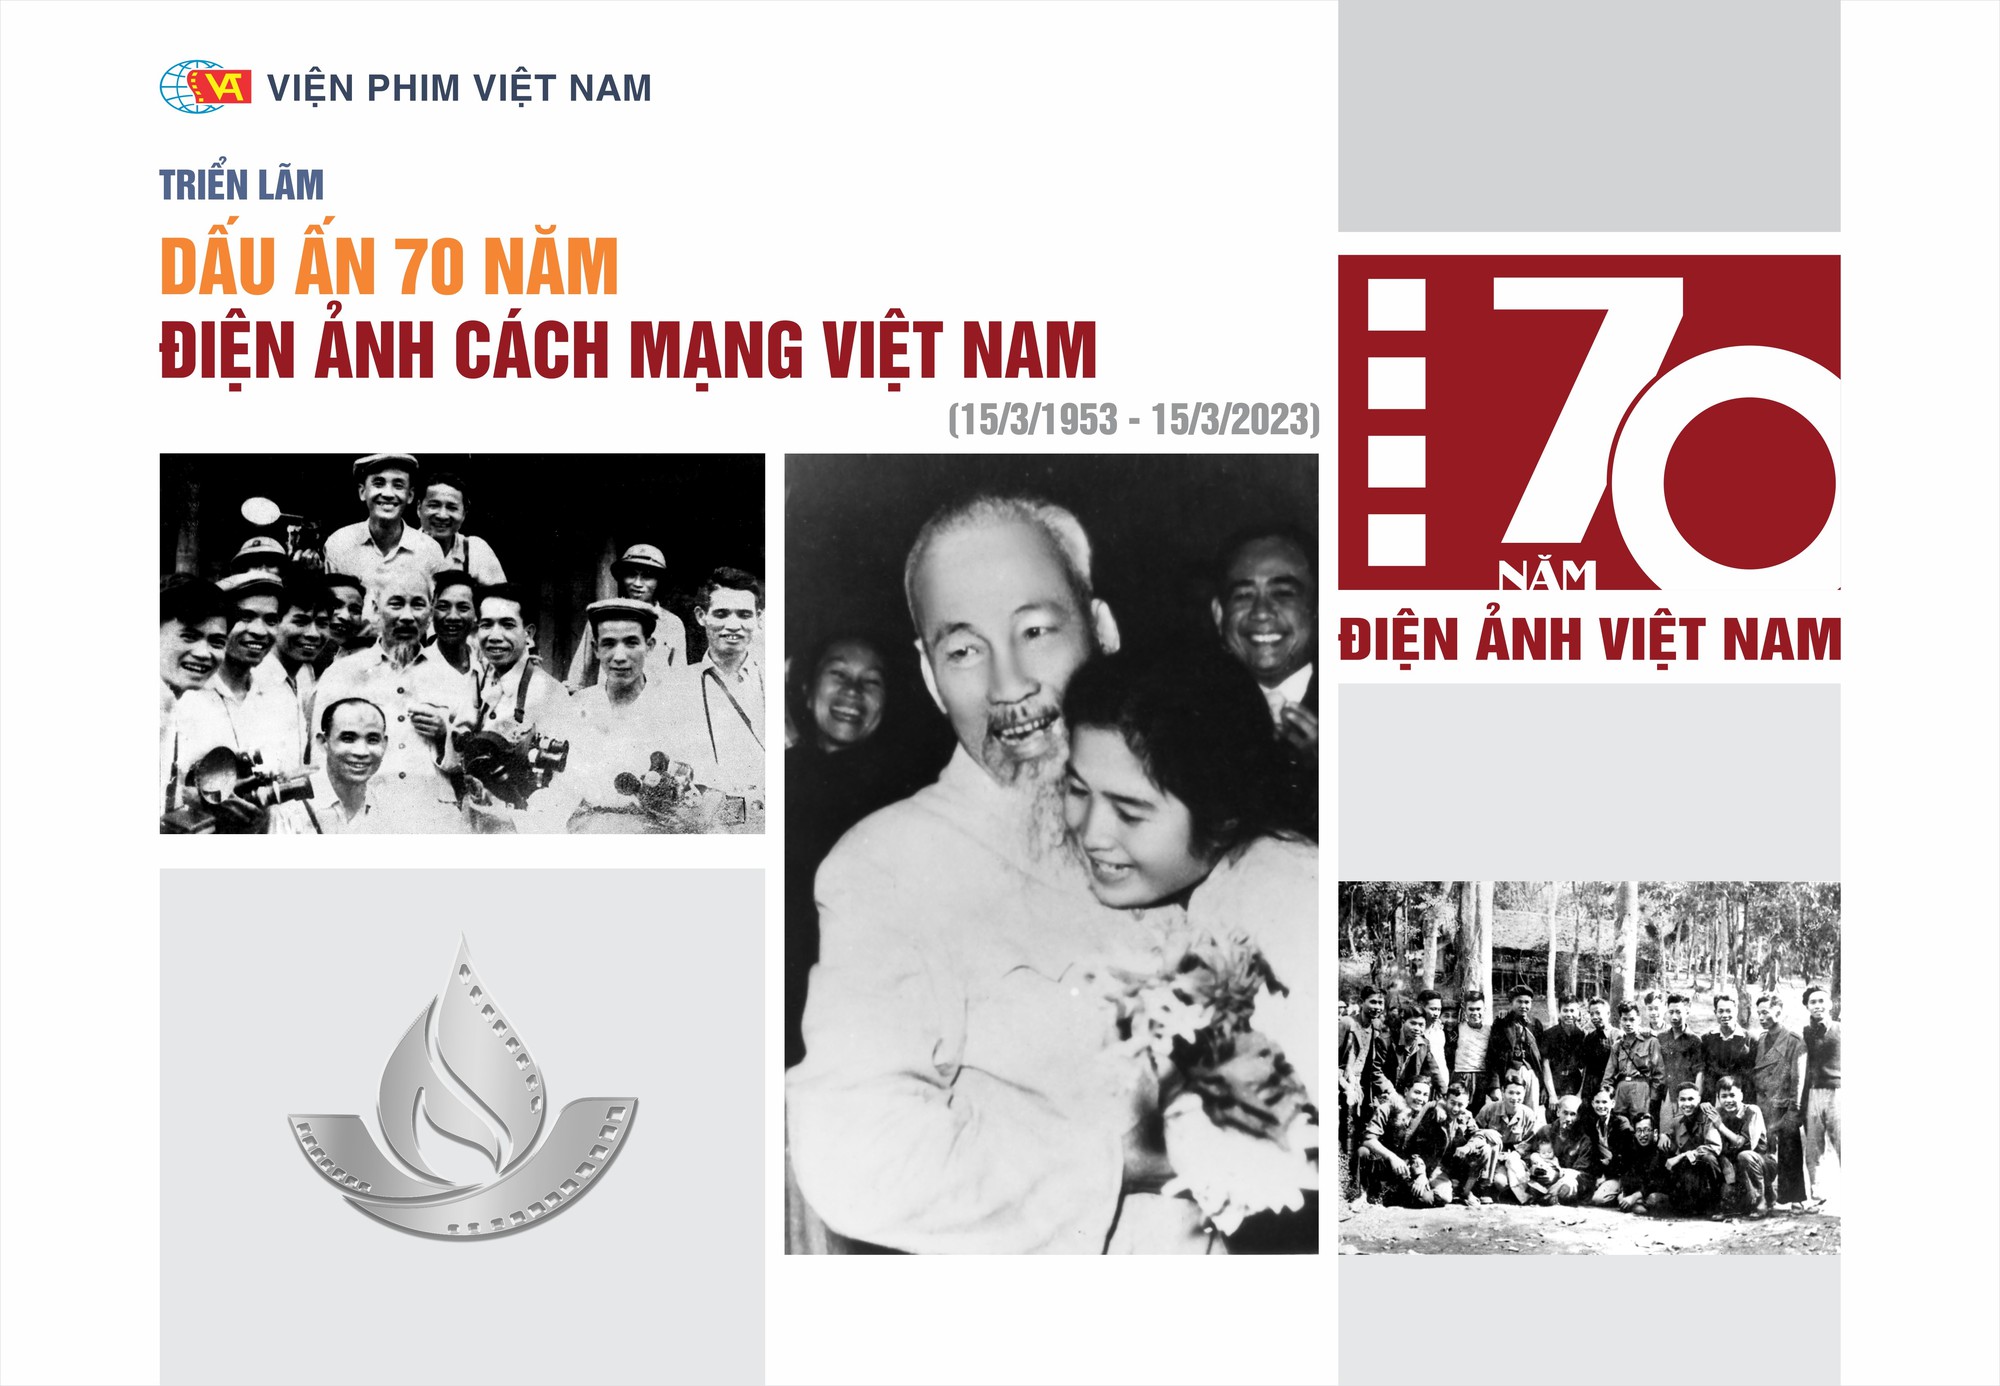 Trưng bày 200 tư liệu quý về &quot;Dấu ấn 70 năm Điện ảnh Cách mạng Việt Nam&quot; - Ảnh 1.